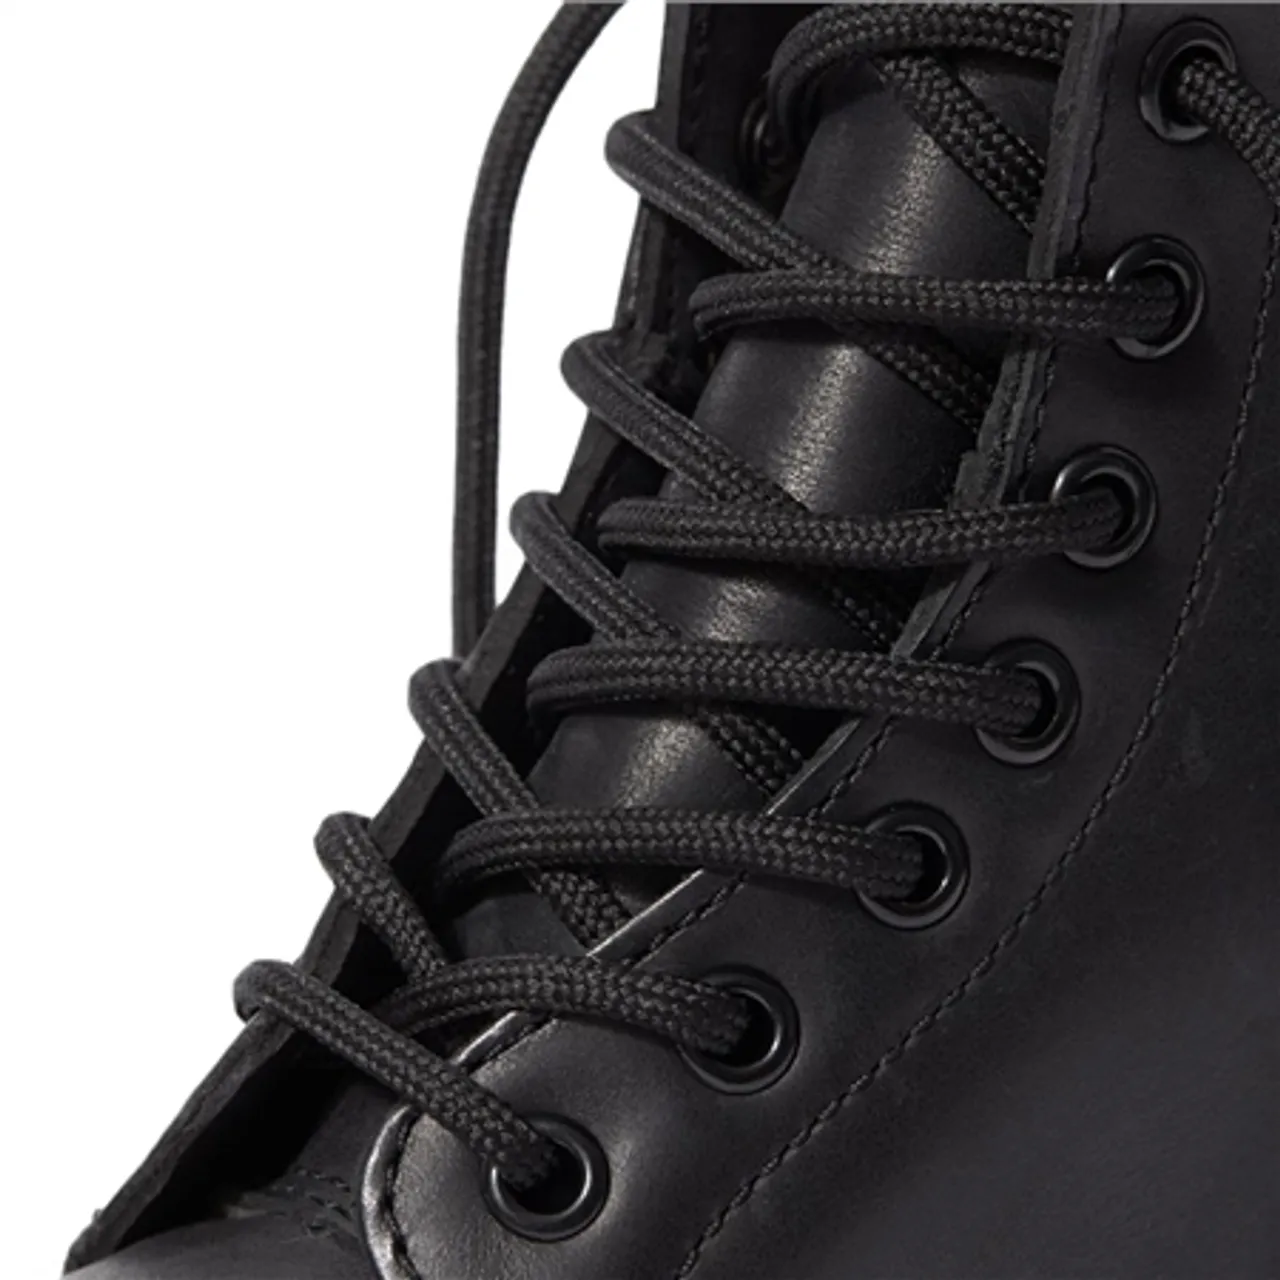 Dr Martens 1460 Serena Wyoming Boots - Black - UK 4 (EU 37)